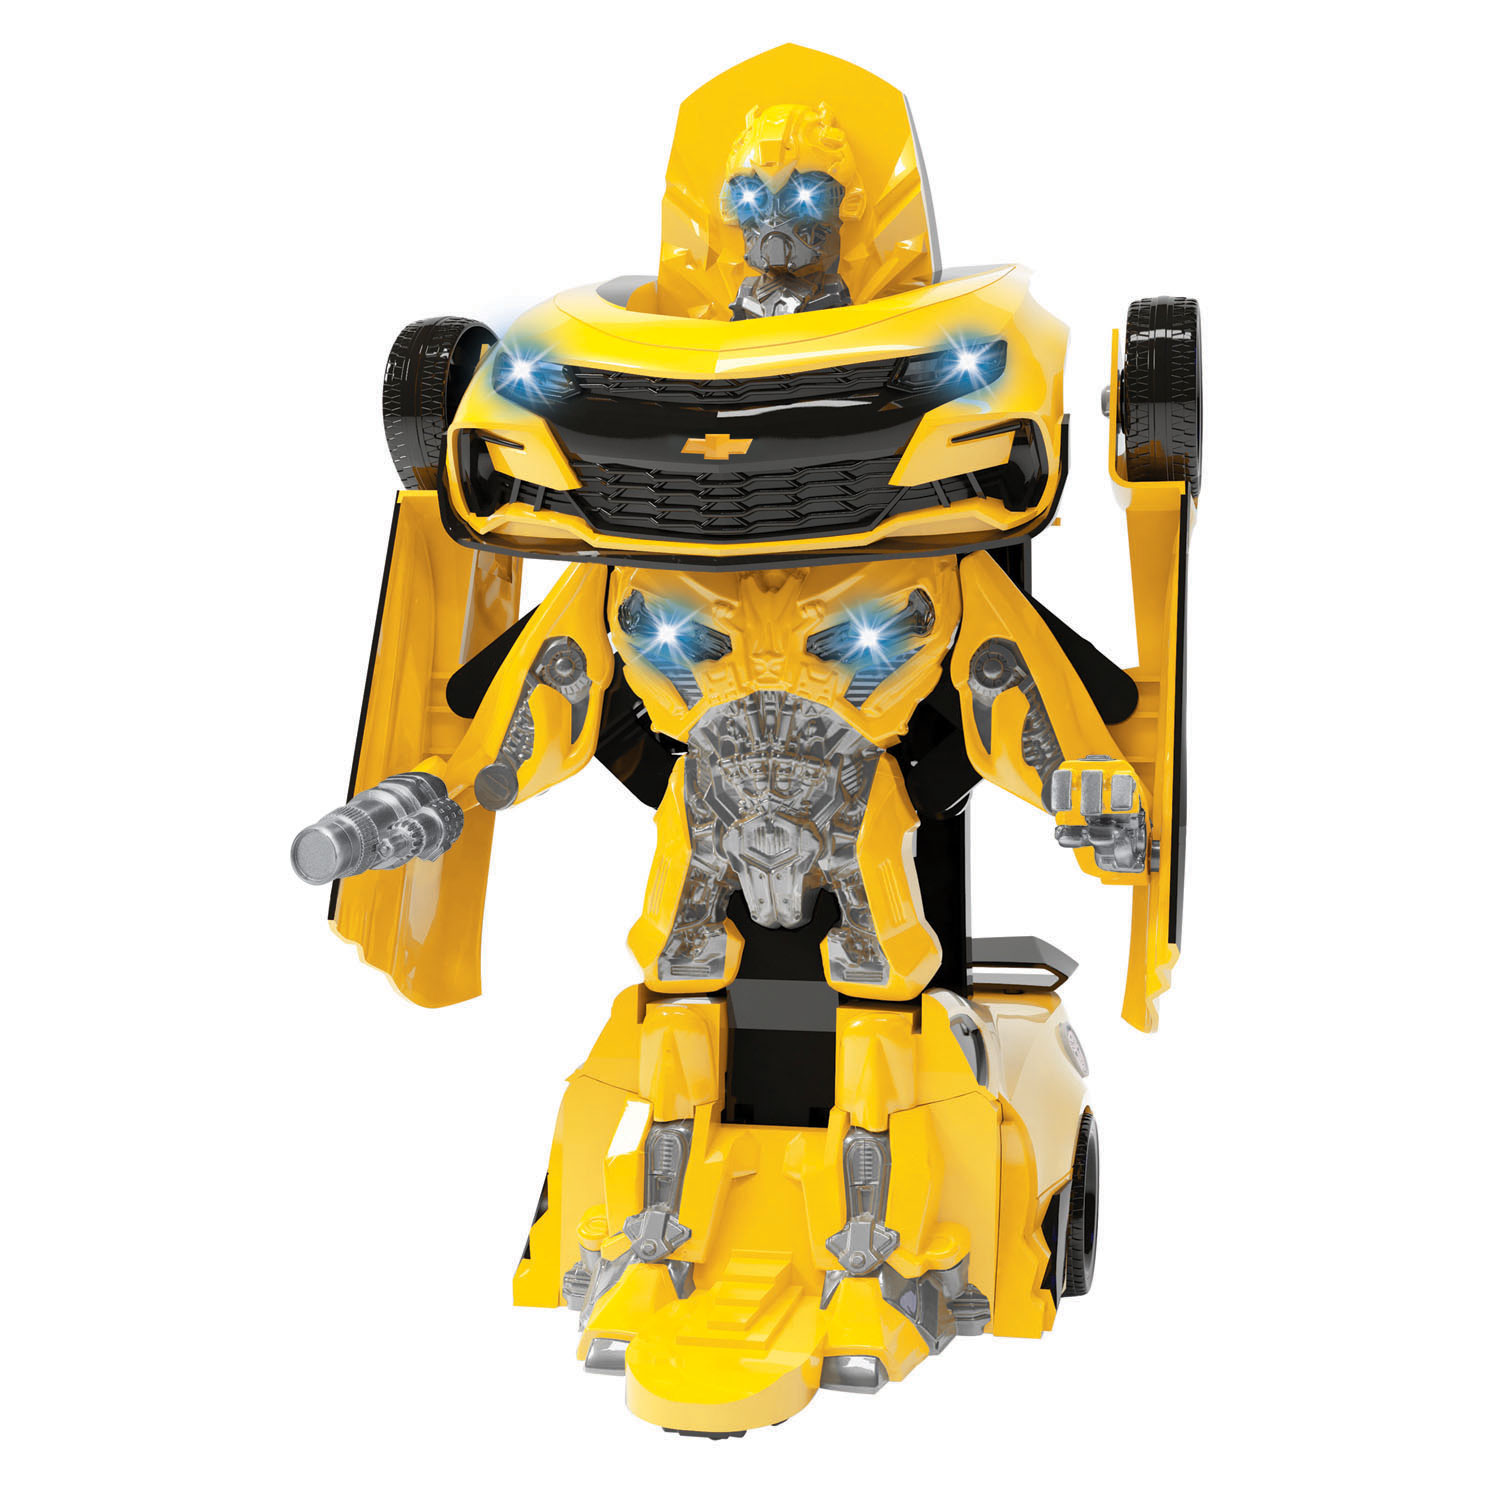 M transformer. Робот-трансформер m6697. Бамблби игрушка трансформер Kingdom. Бамблби истребитель. Игрушка трансформер Бамблби маленький.